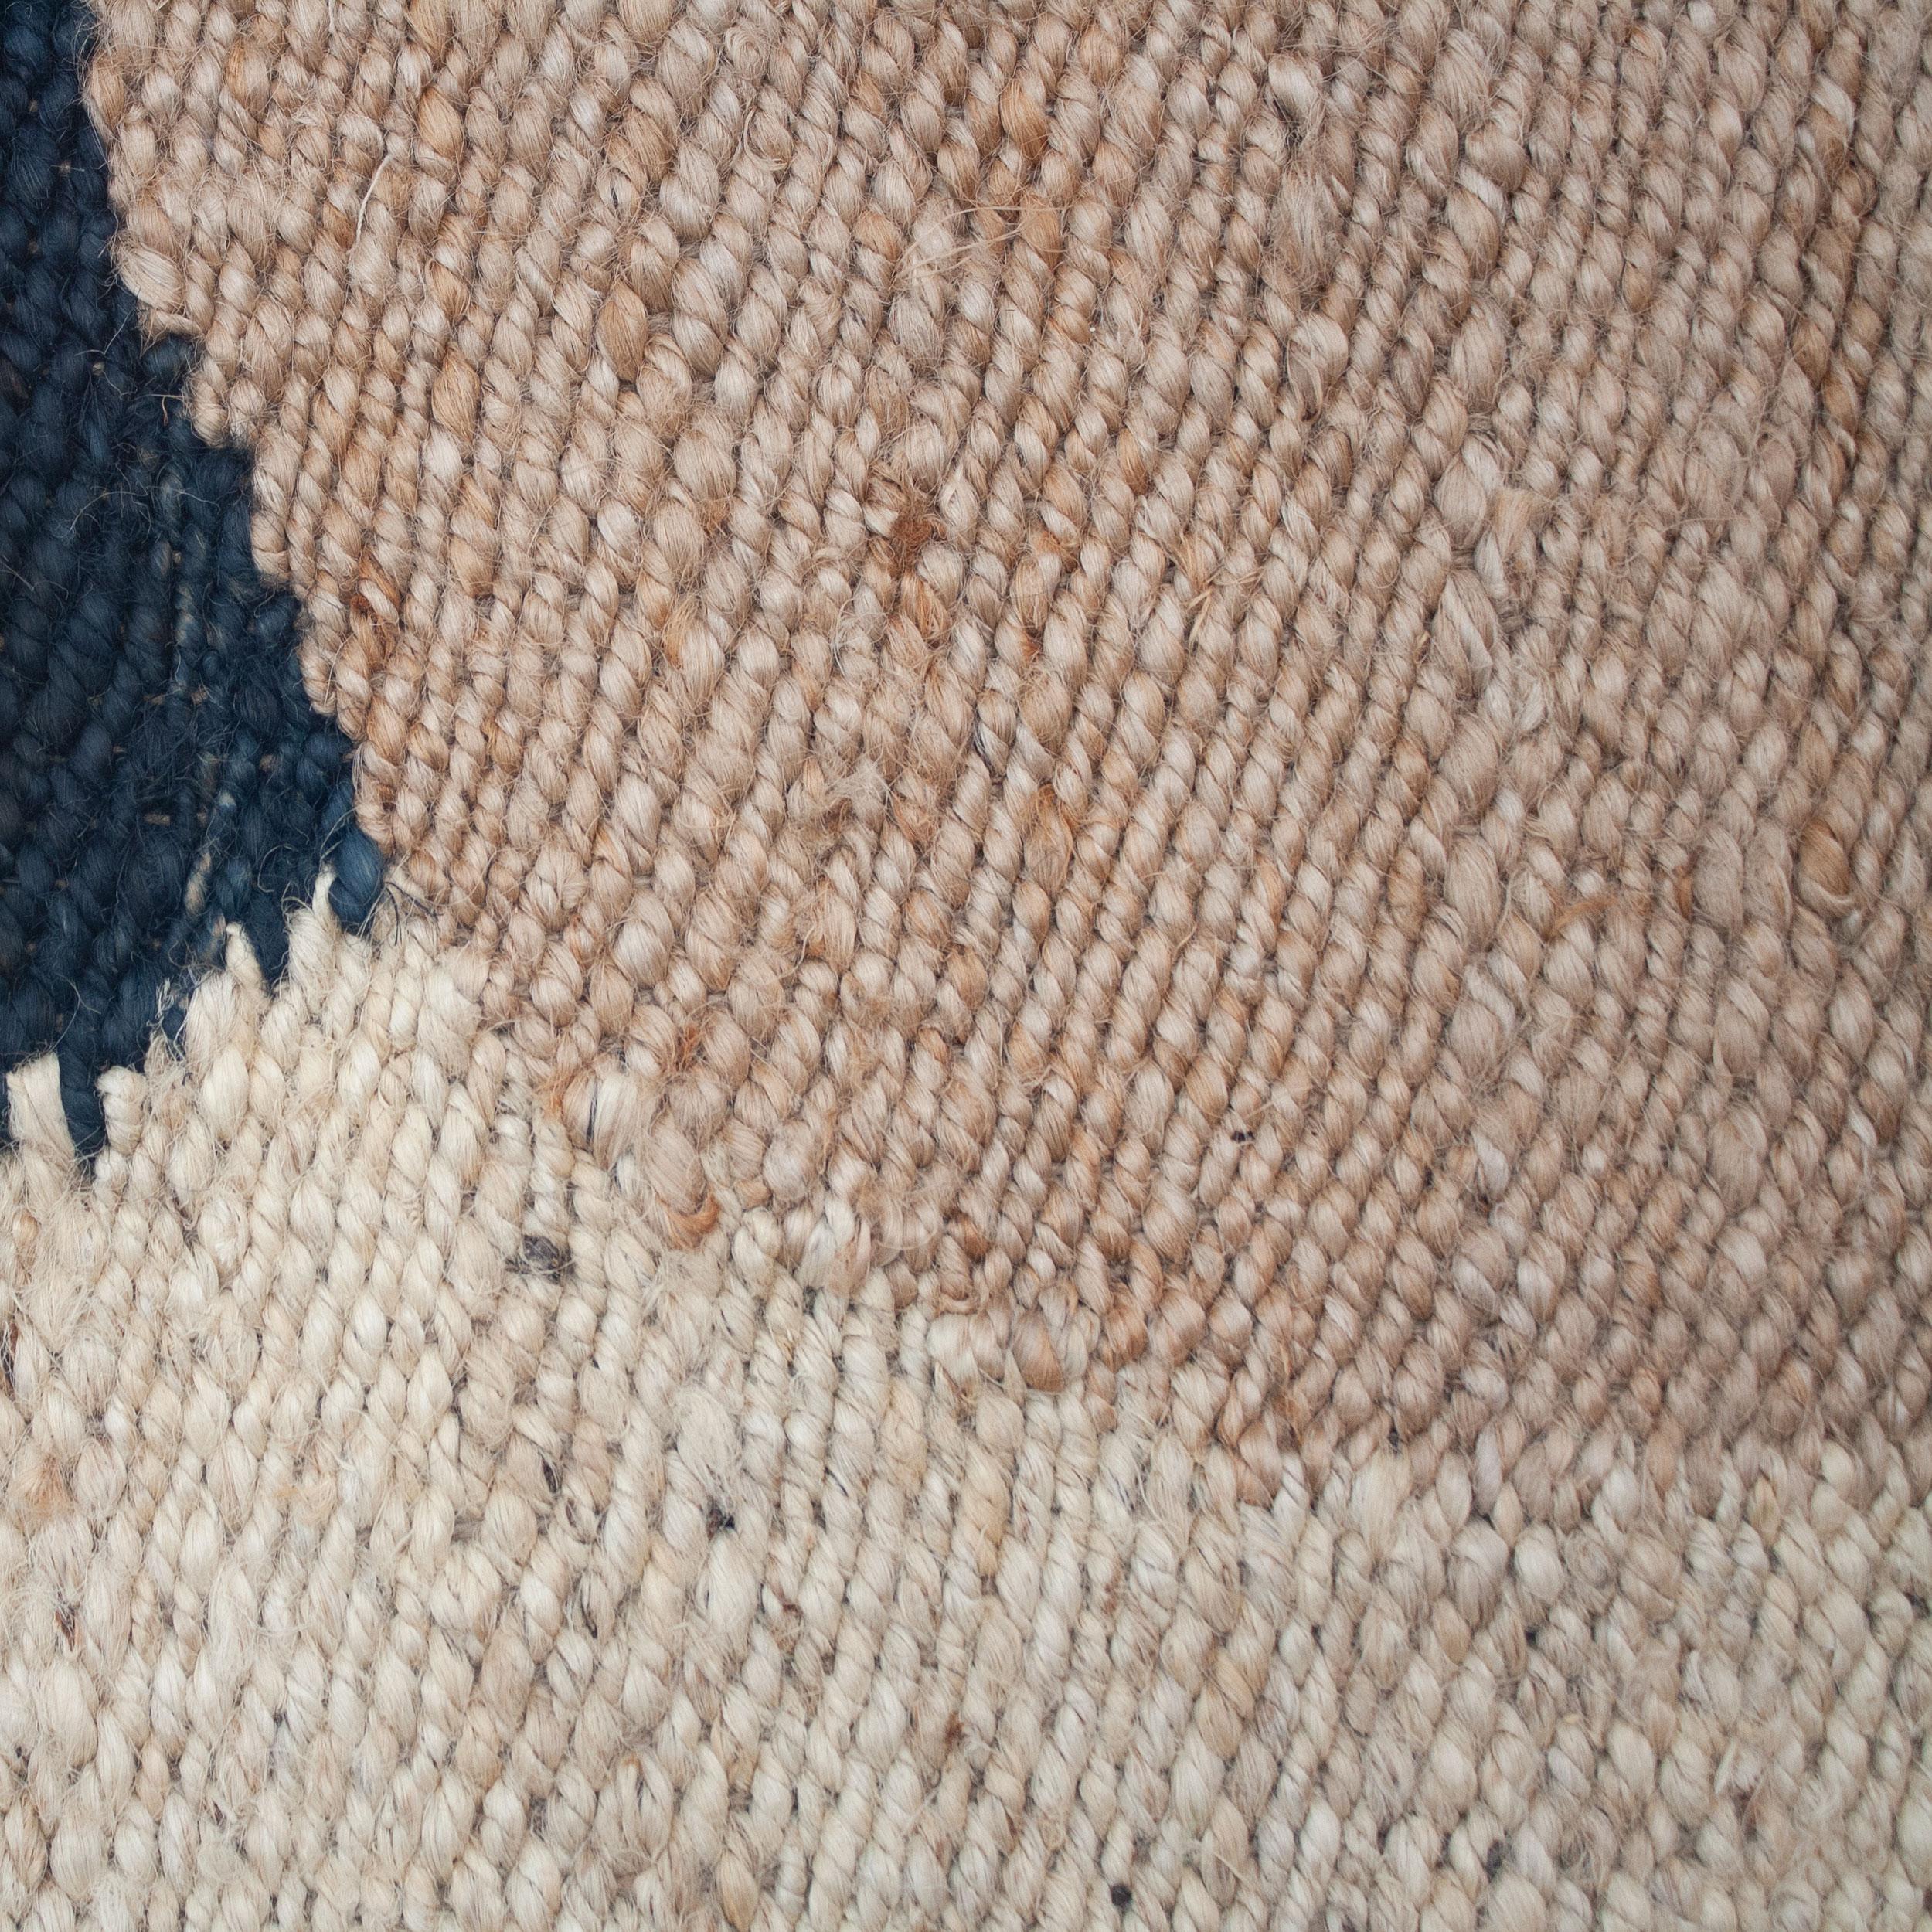 Dieser Juteteppich wurde von Kunsthandwerkern in Rajasthan, Indien, nach ethischen Gesichtspunkten mit feinsten Jutegarnen in einer traditionellen Webtechnik gewebt, die in dieser Region heimisch ist.

Der Kauf dieses handgefertigten Teppichs hilft,